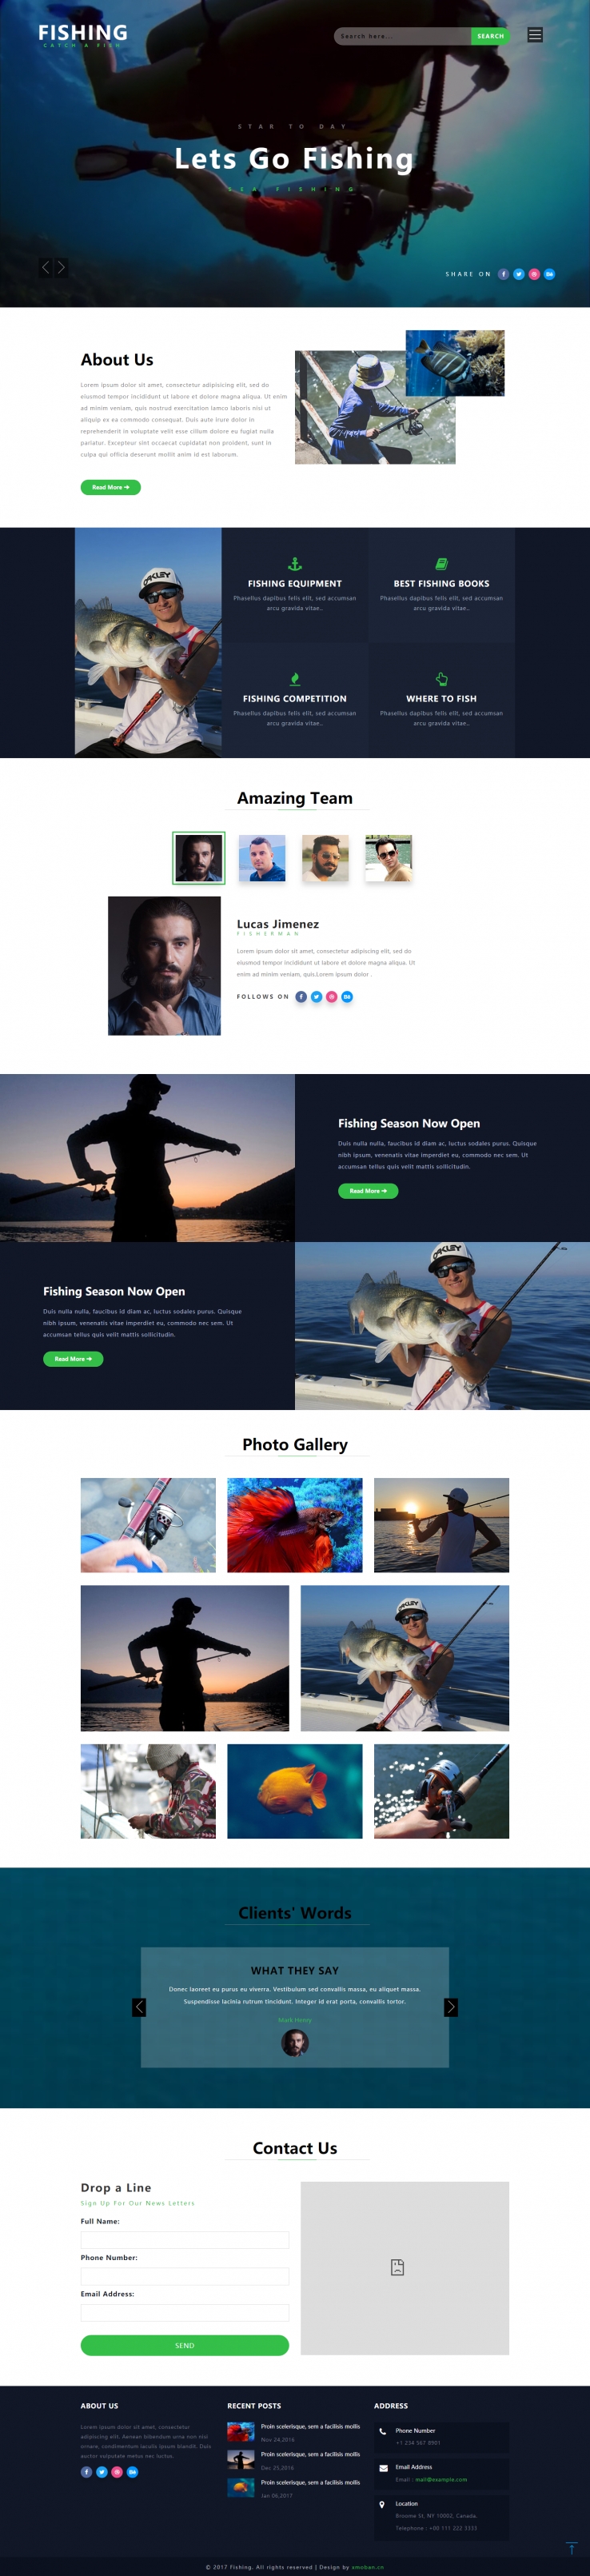 绿色欧美风格的钓鱼企业网站源码下载